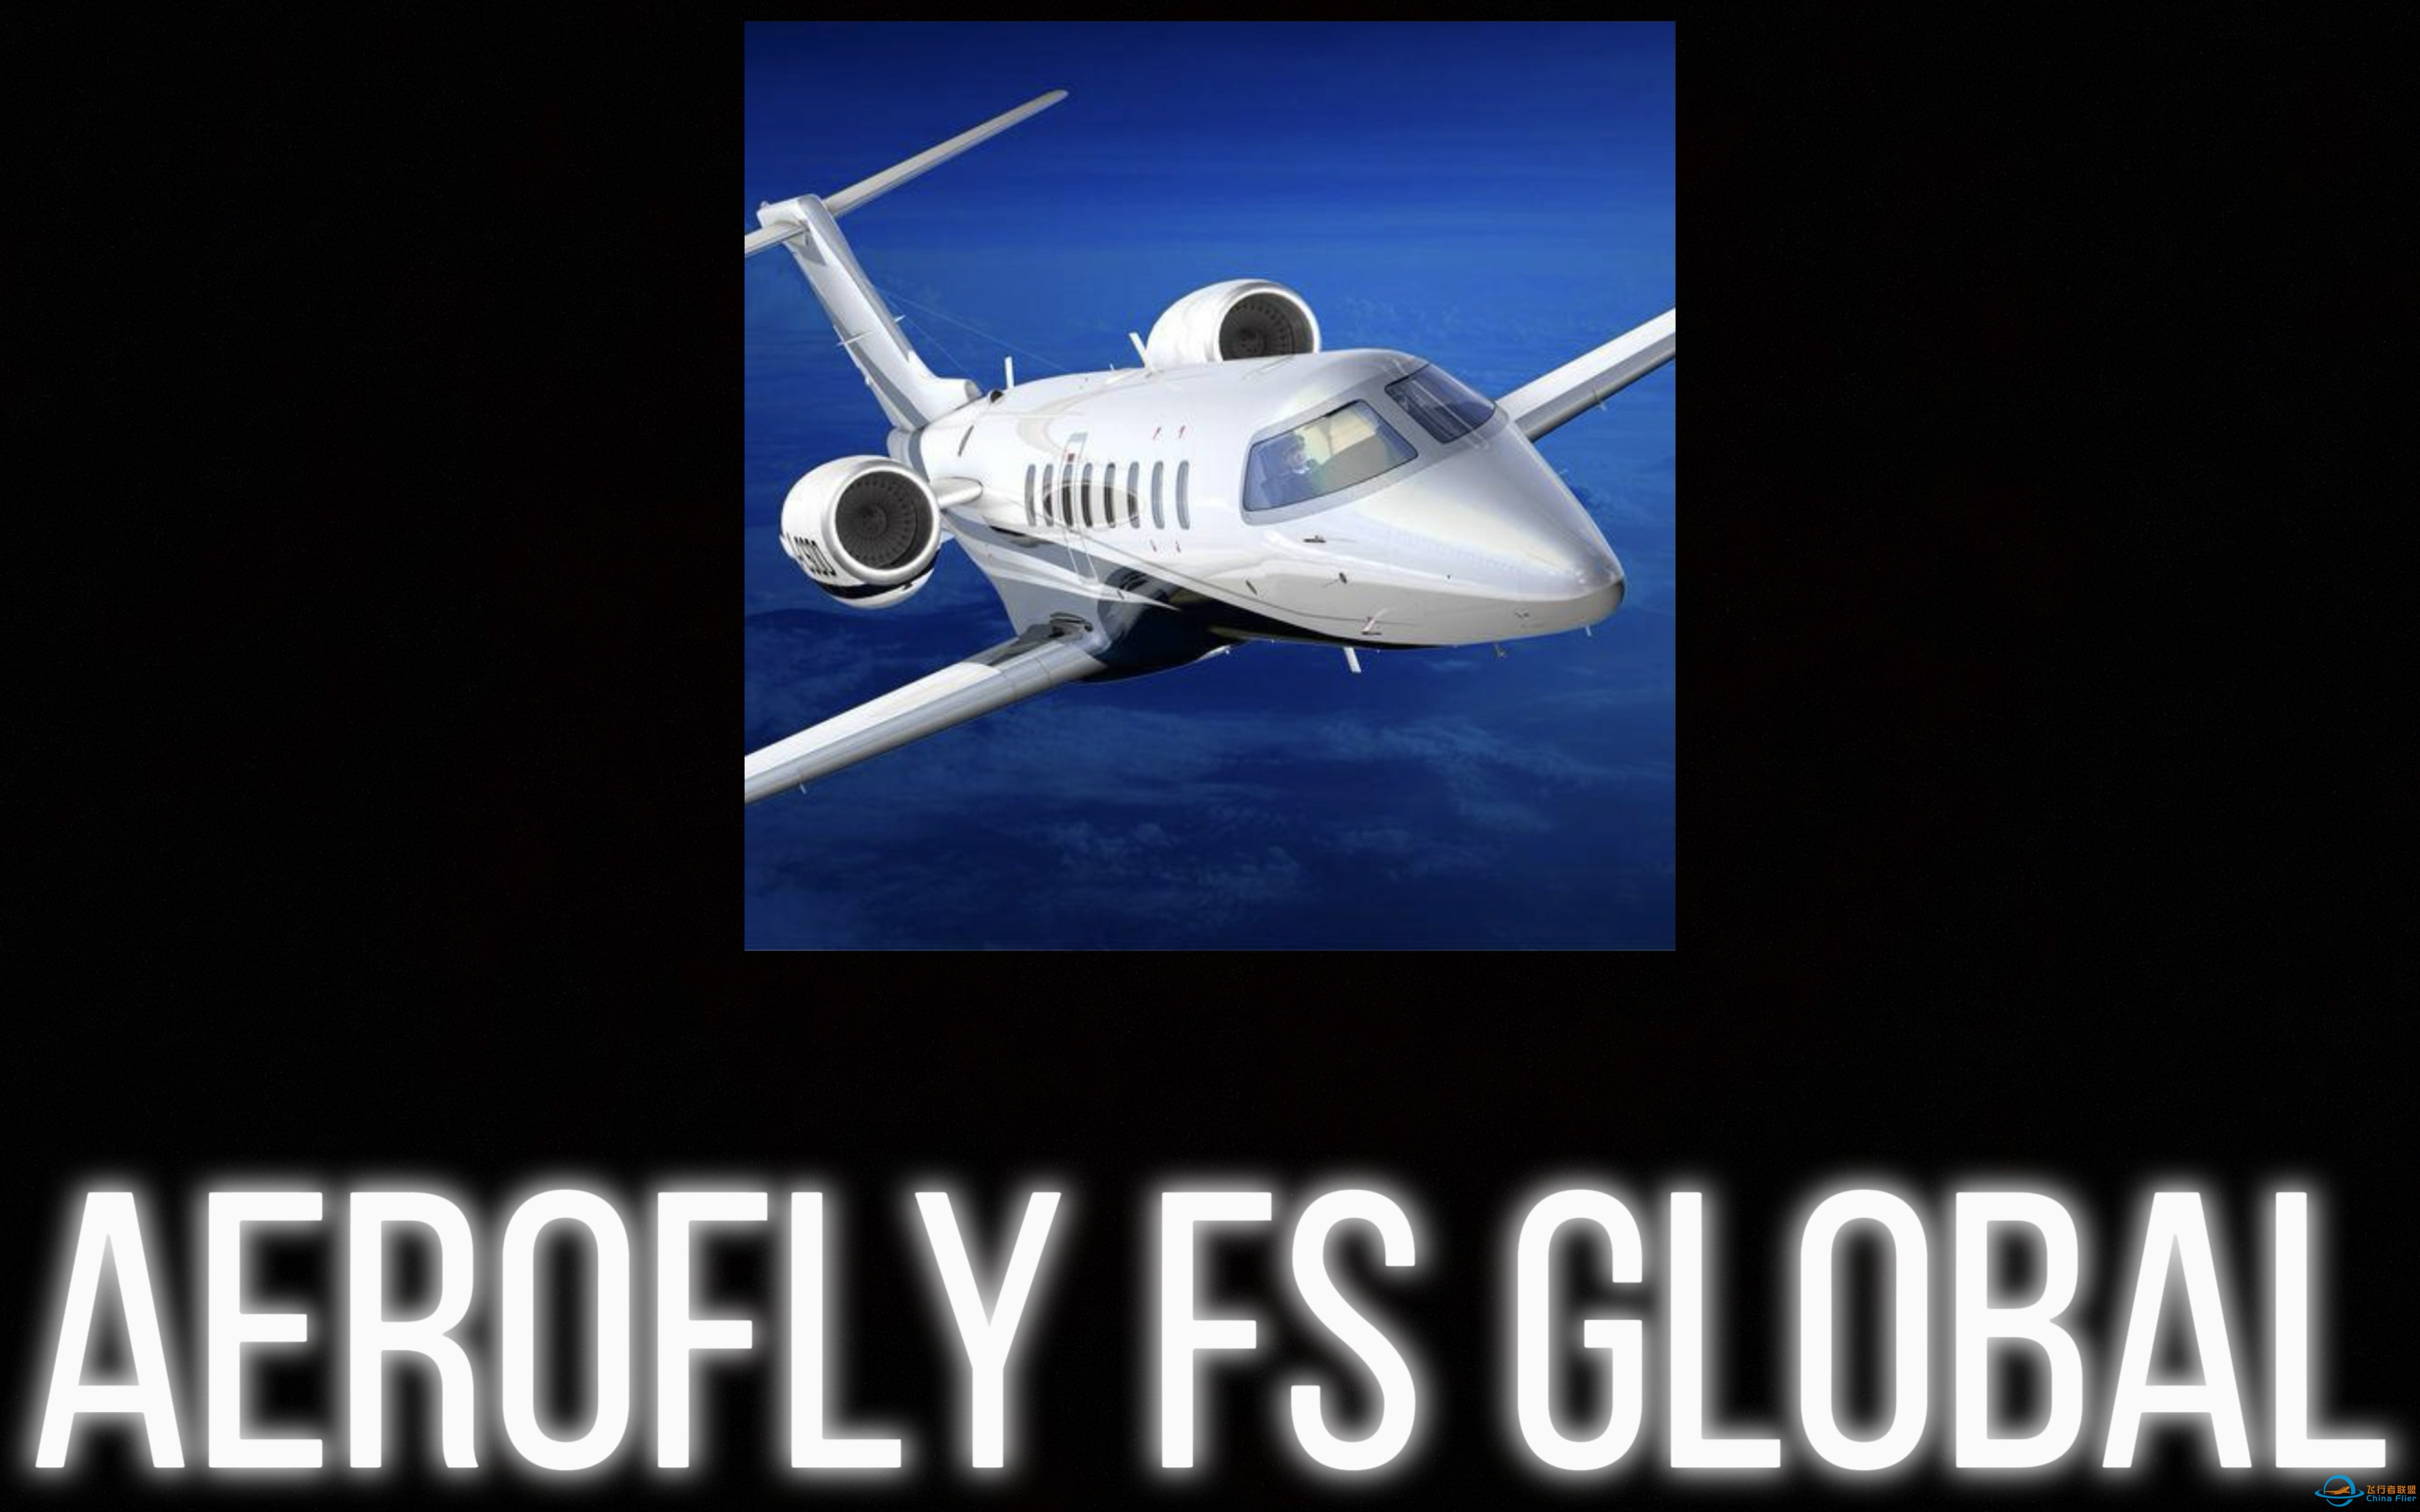 谨以此片献给所有Aerofly Fs玩家-航空永无止境-8000 